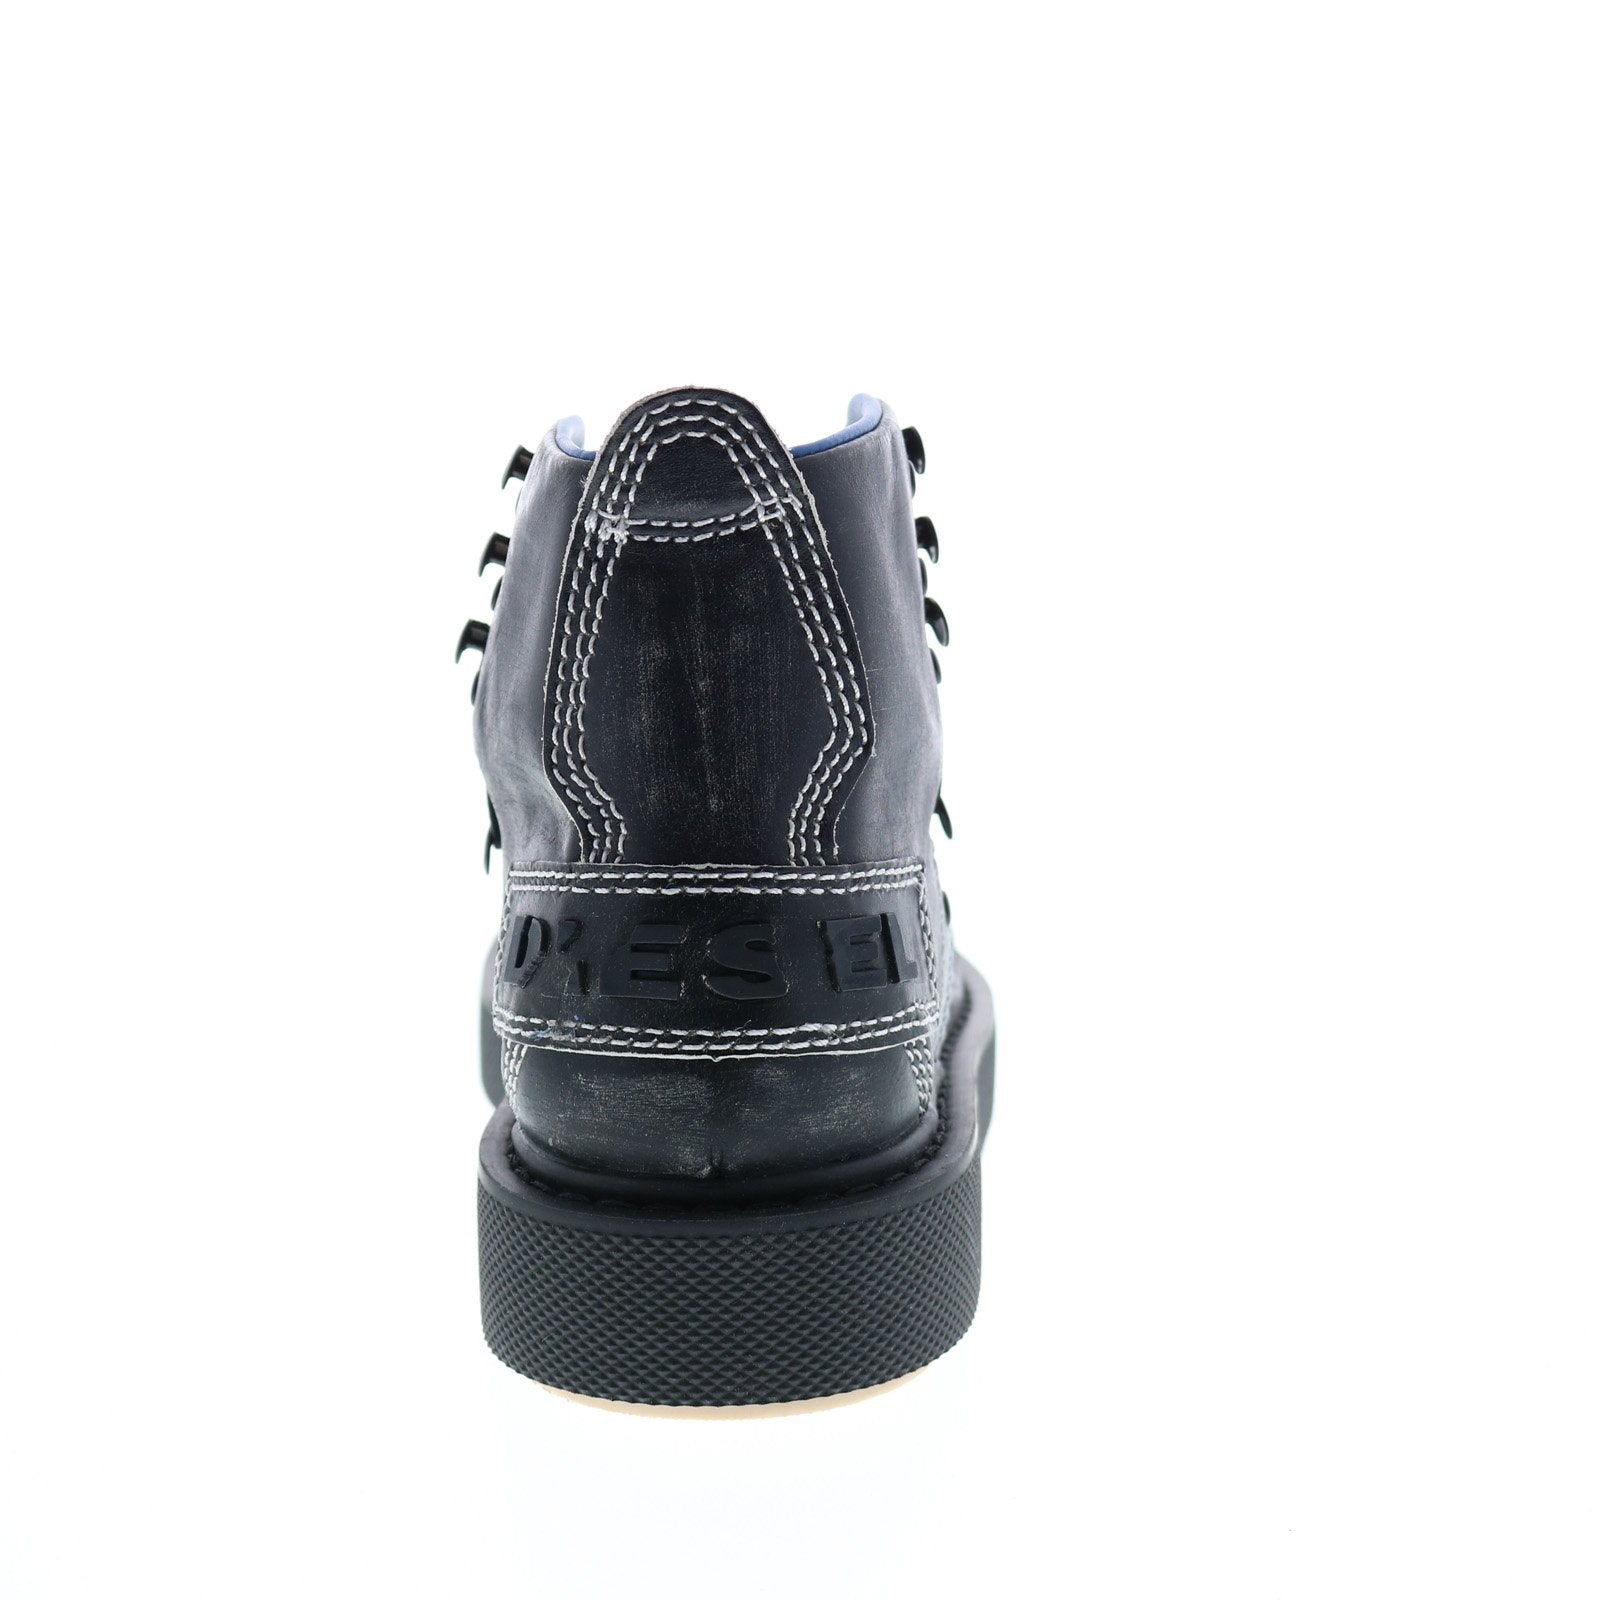 LITTLE SHOE HAUL 🔥🐼 Jordan 4 Neon / LV Skates Louis Vuitton